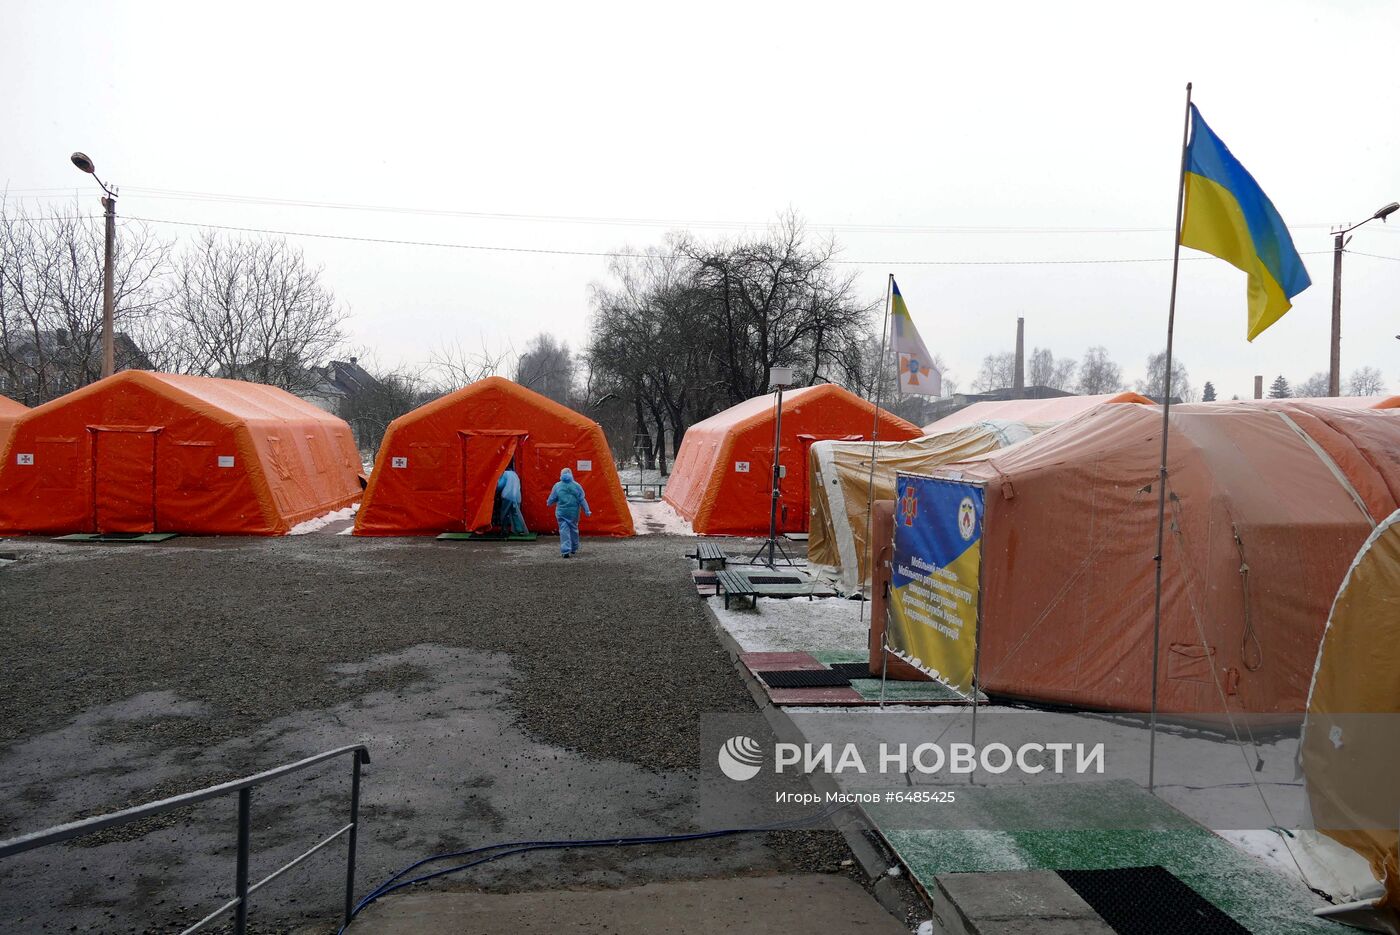 Ситуация в Ивано-Франковской области Украины в связи с коронавирусом